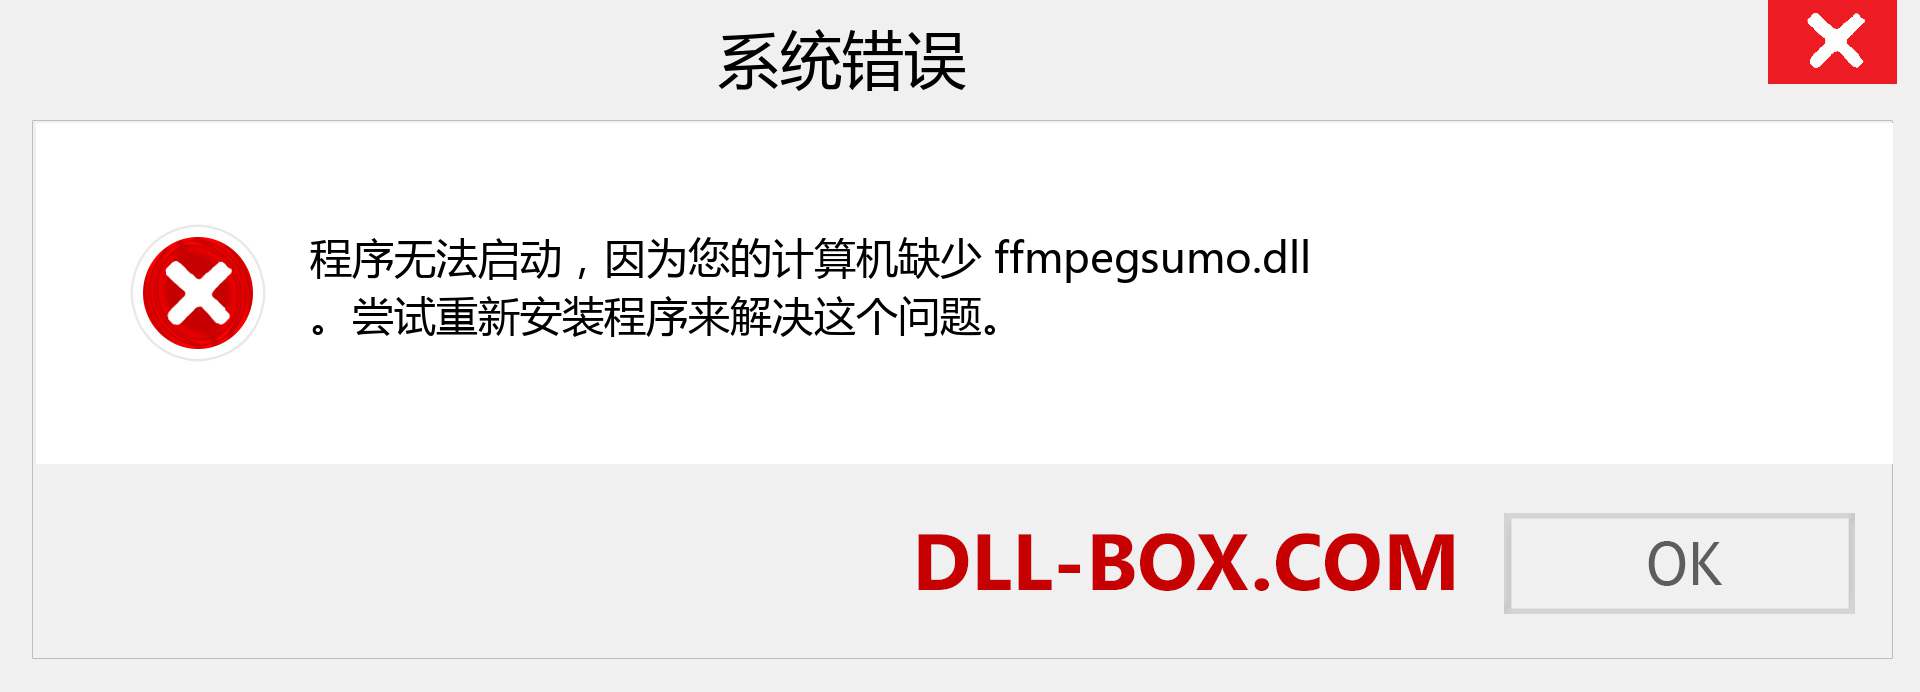 ffmpegsumo.dll 文件丢失？。 适用于 Windows 7、8、10 的下载 - 修复 Windows、照片、图像上的 ffmpegsumo dll 丢失错误